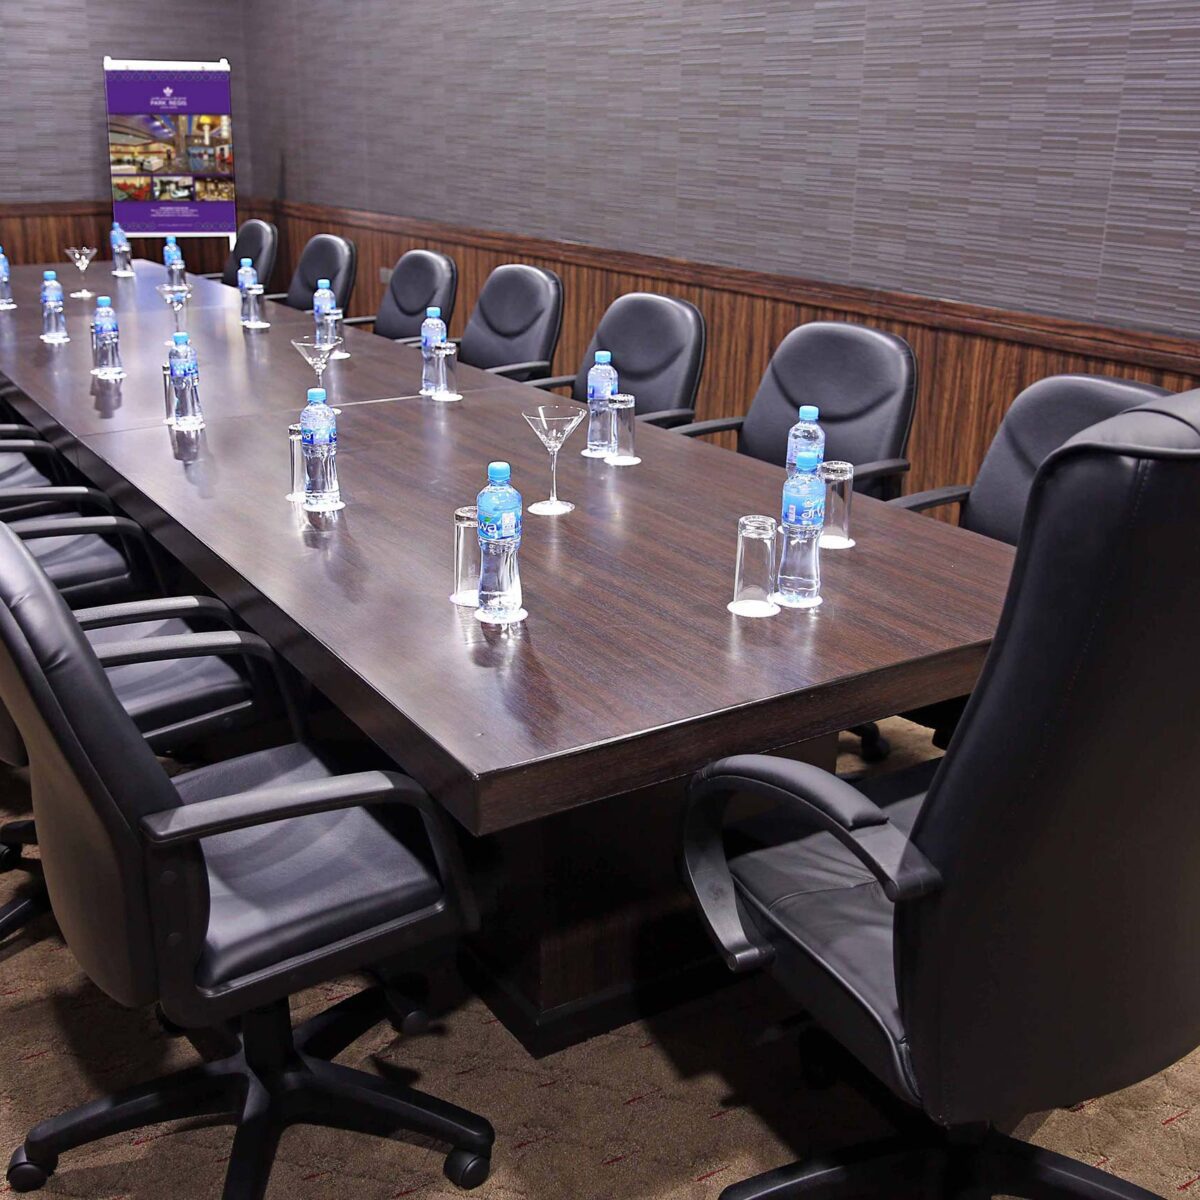 Meeting Room in Bahrain